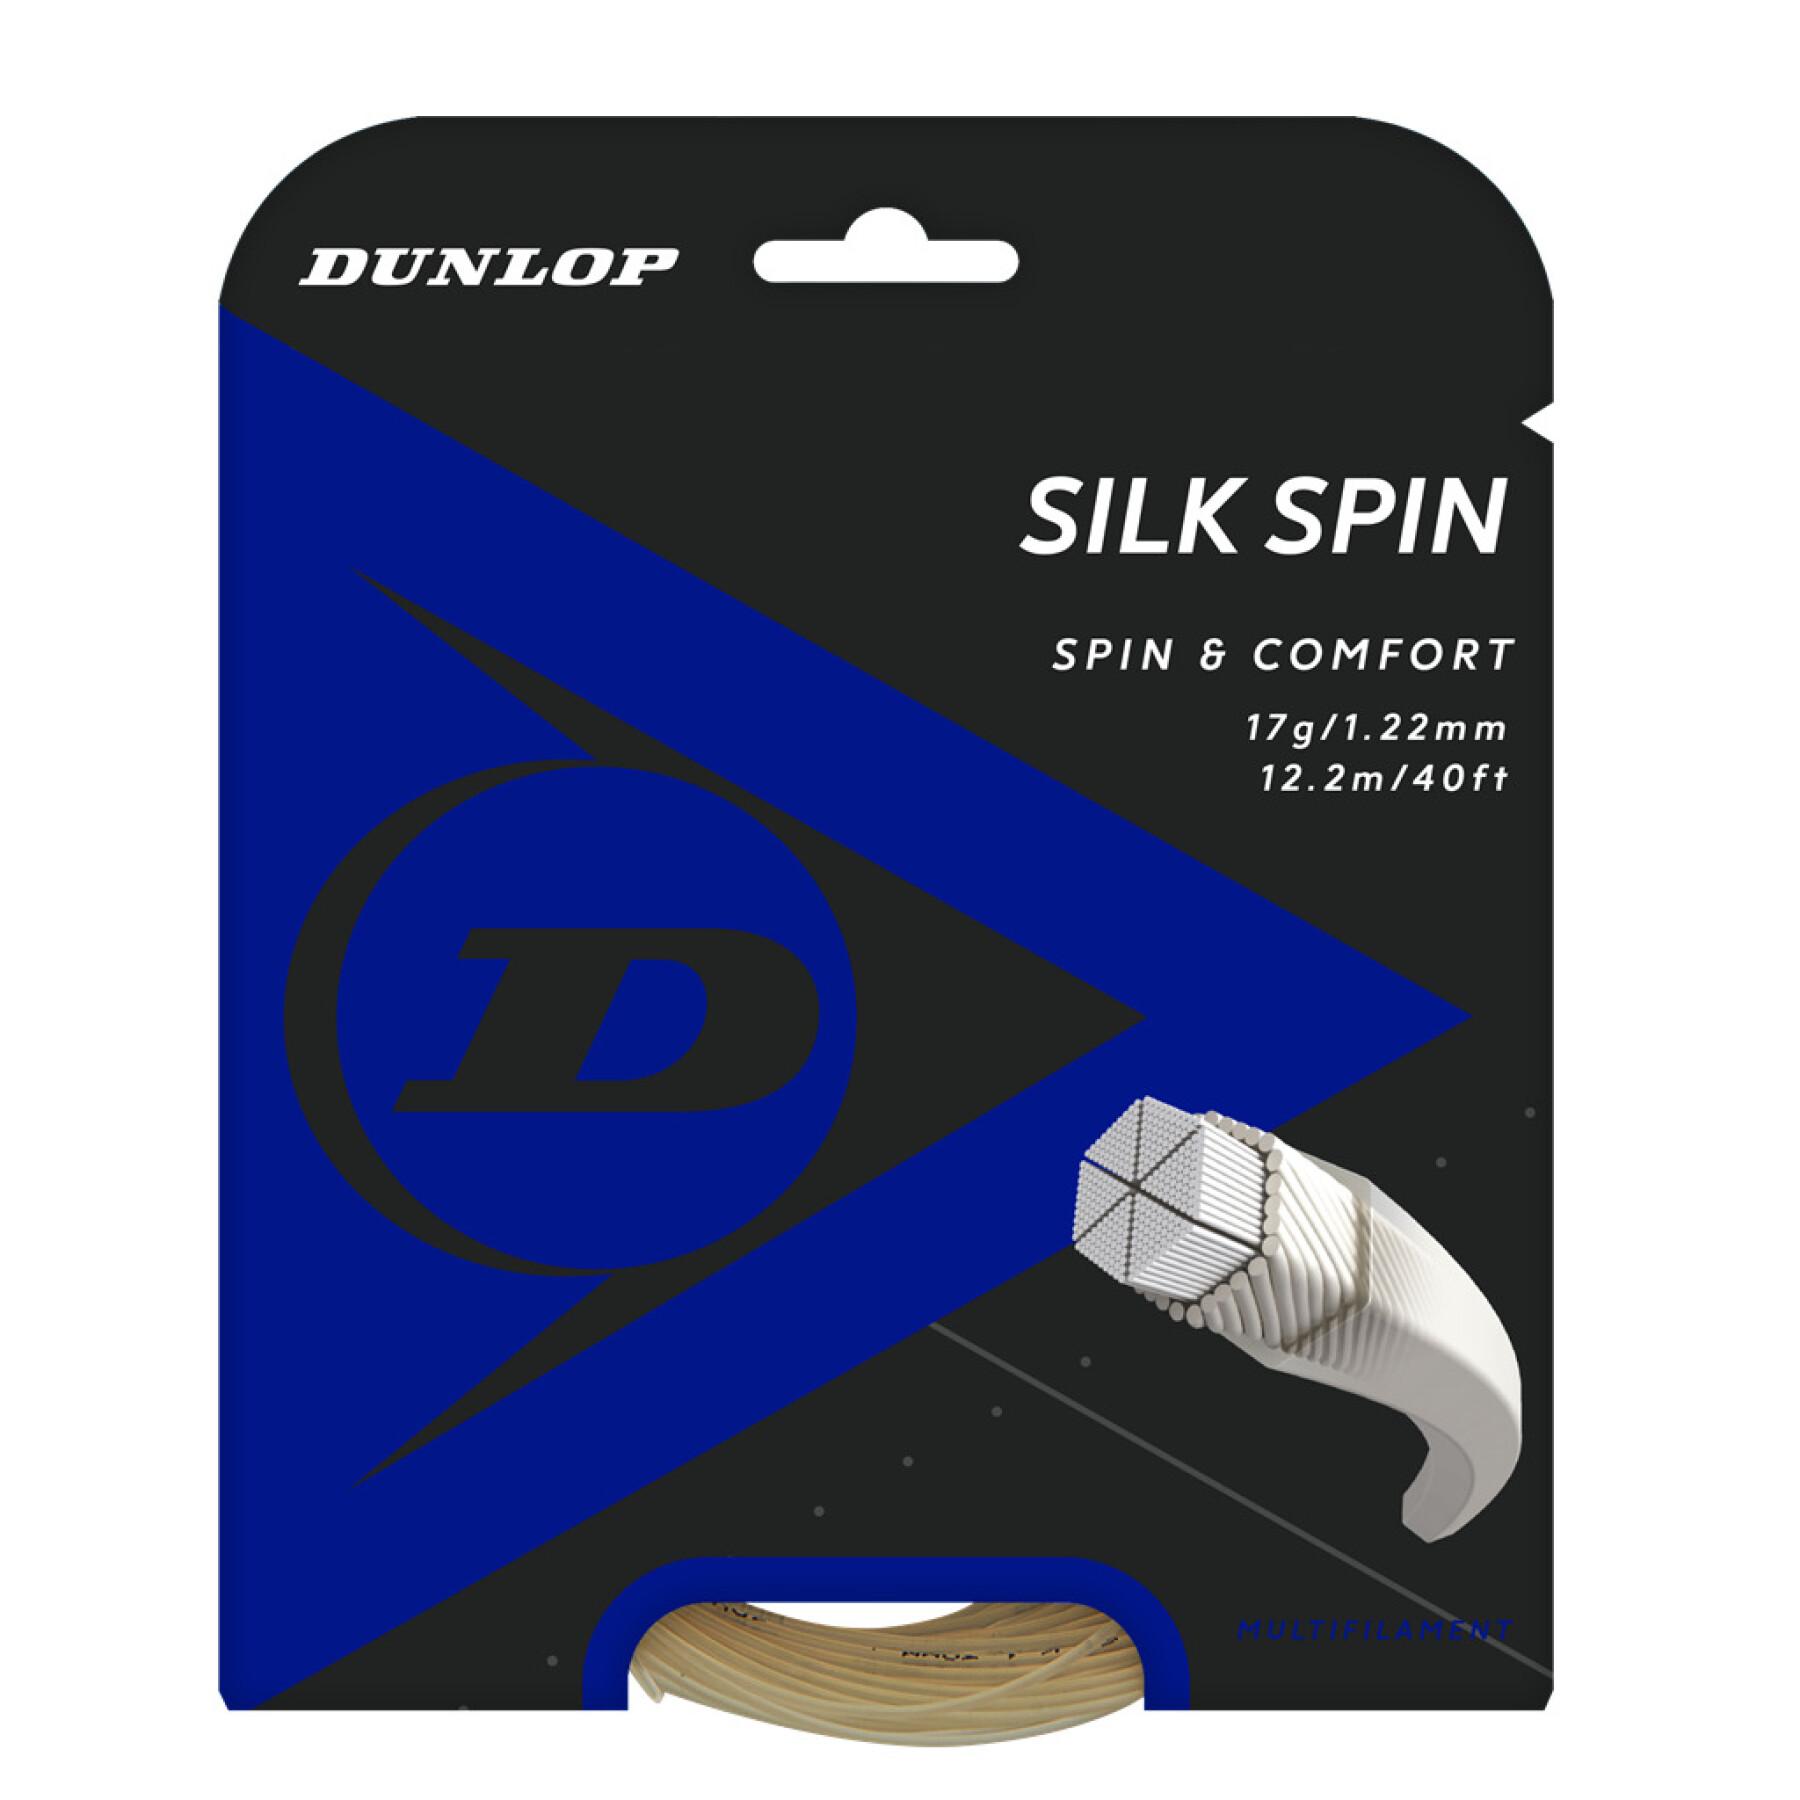 Rep Dunlop silk spin